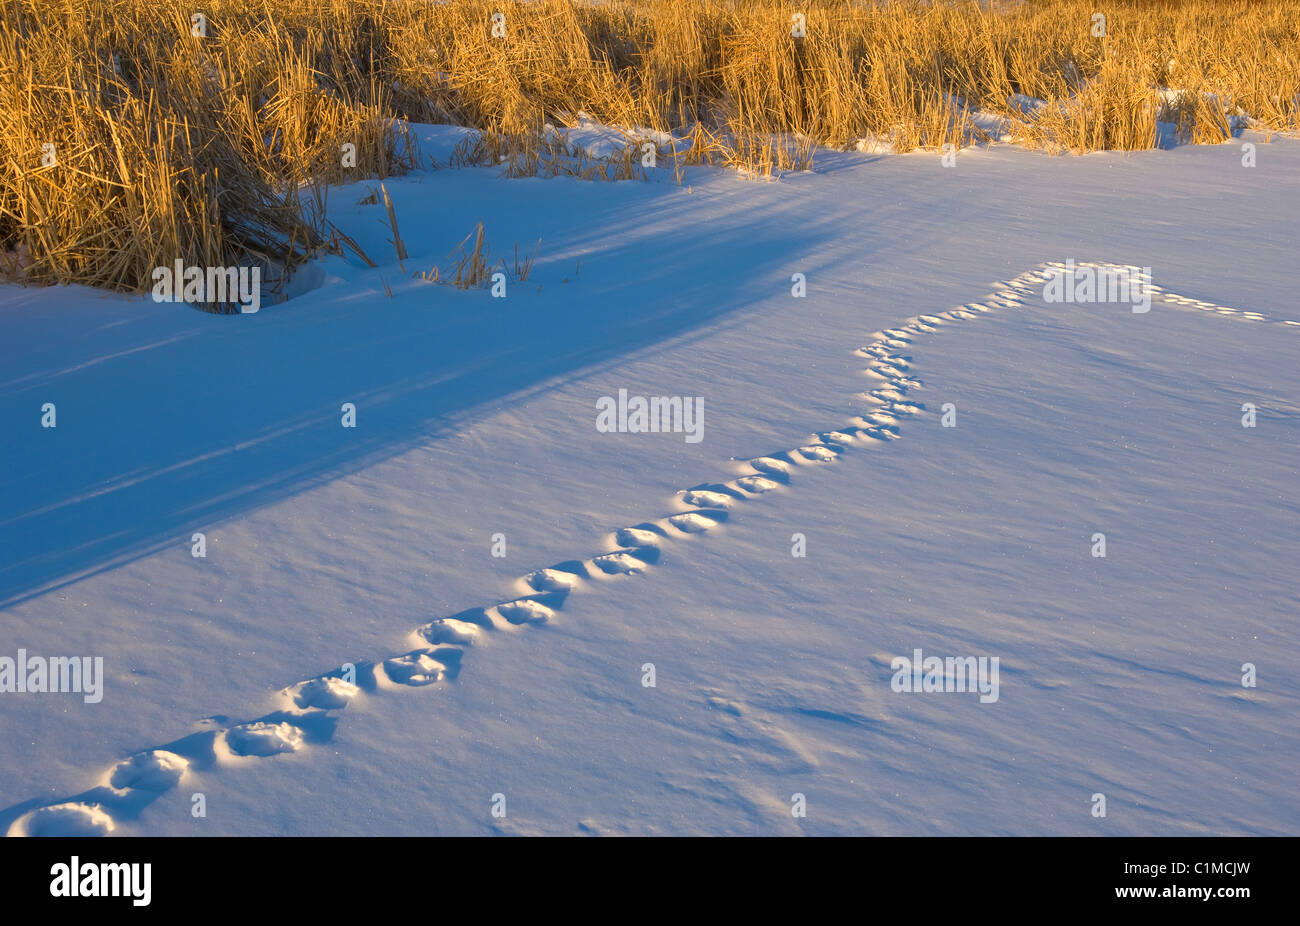 Les voies de la Bernache du Canada dans la neige est de l'USA Banque D'Images